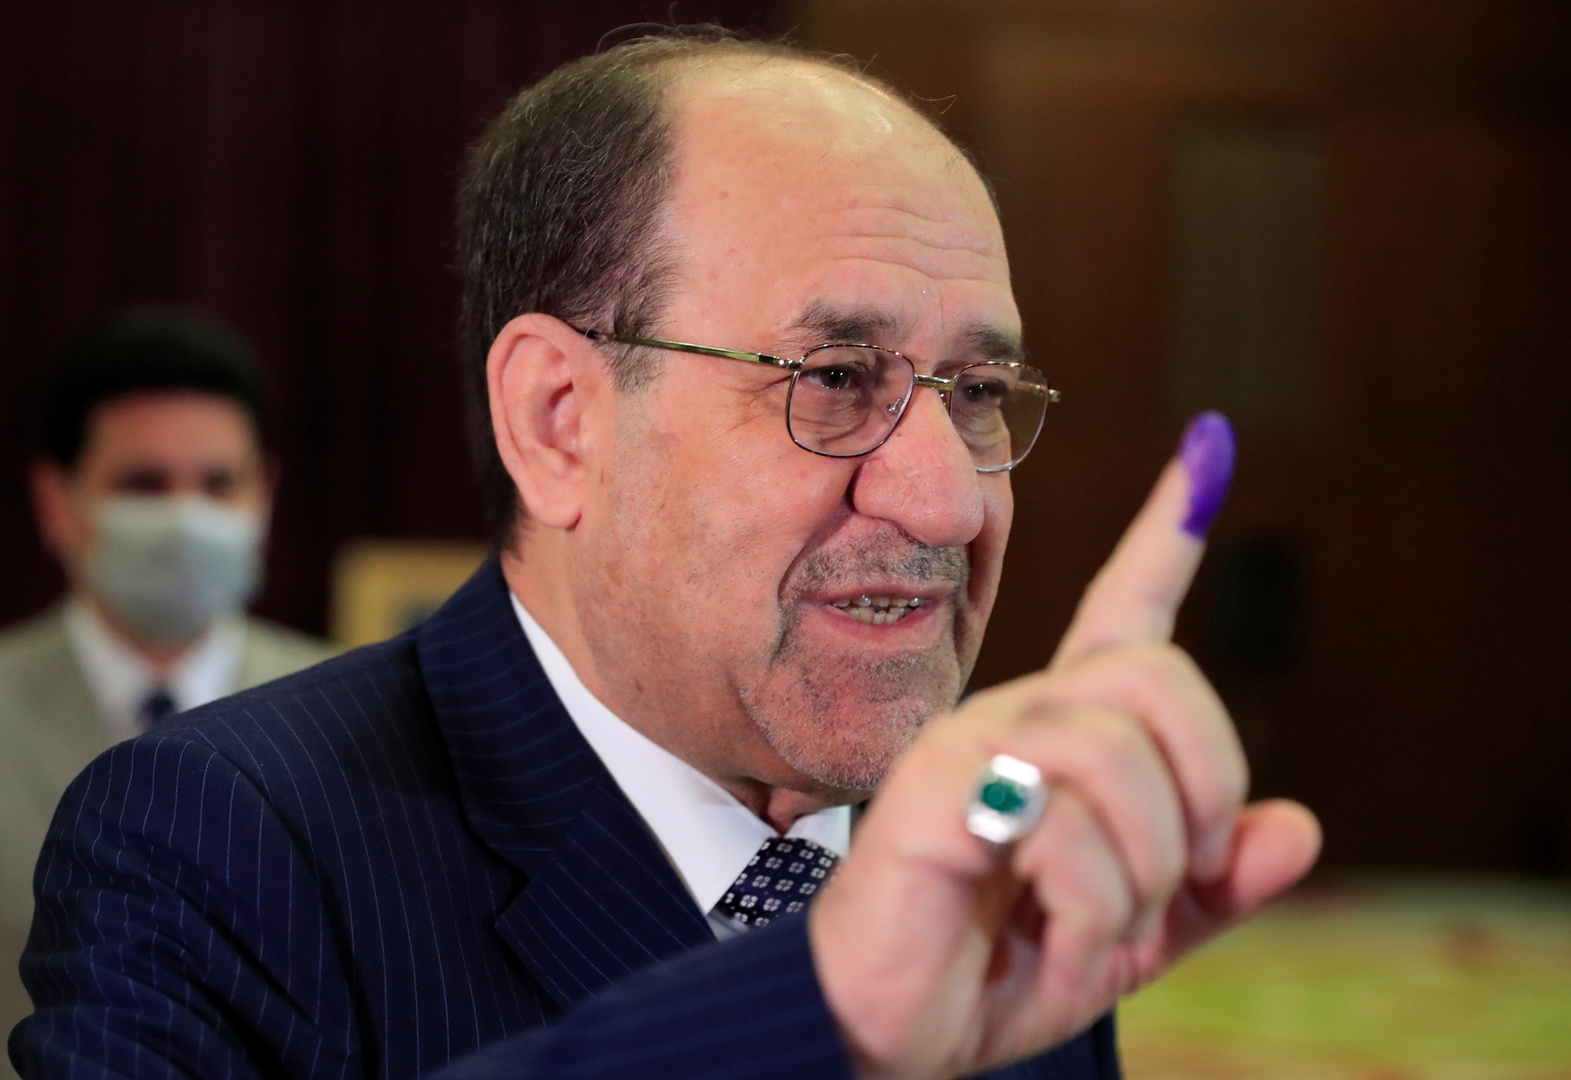 المالكي: القوى الوطنية ستجتمع للتداول في أزمة نتائج الانتخابات العراقية